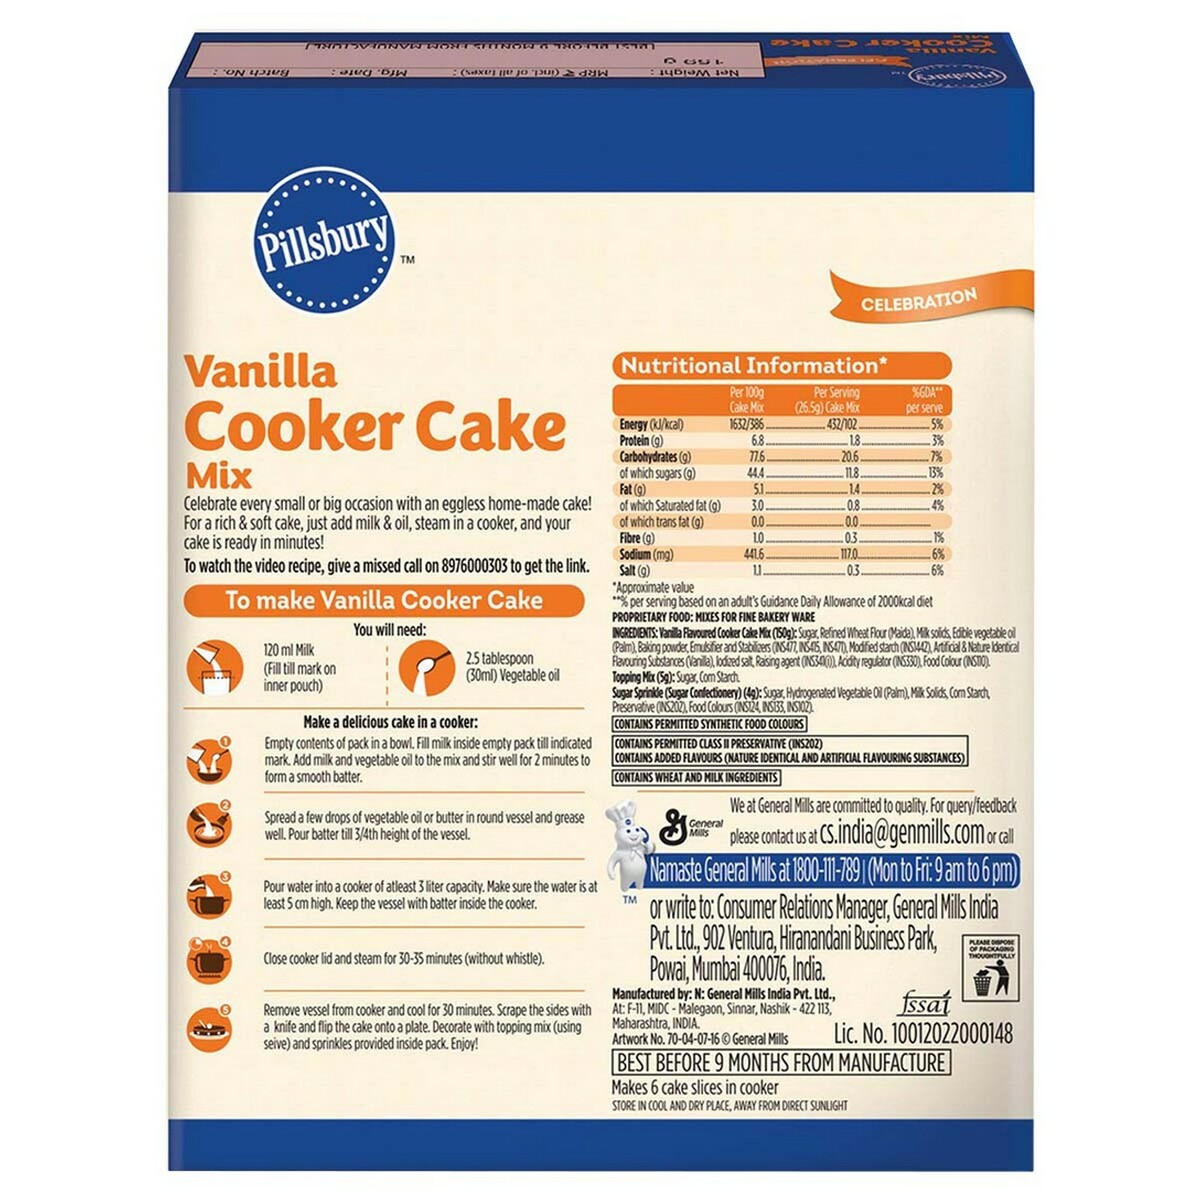 Pillsbury Cooker Cake Mix Vanilla 159g